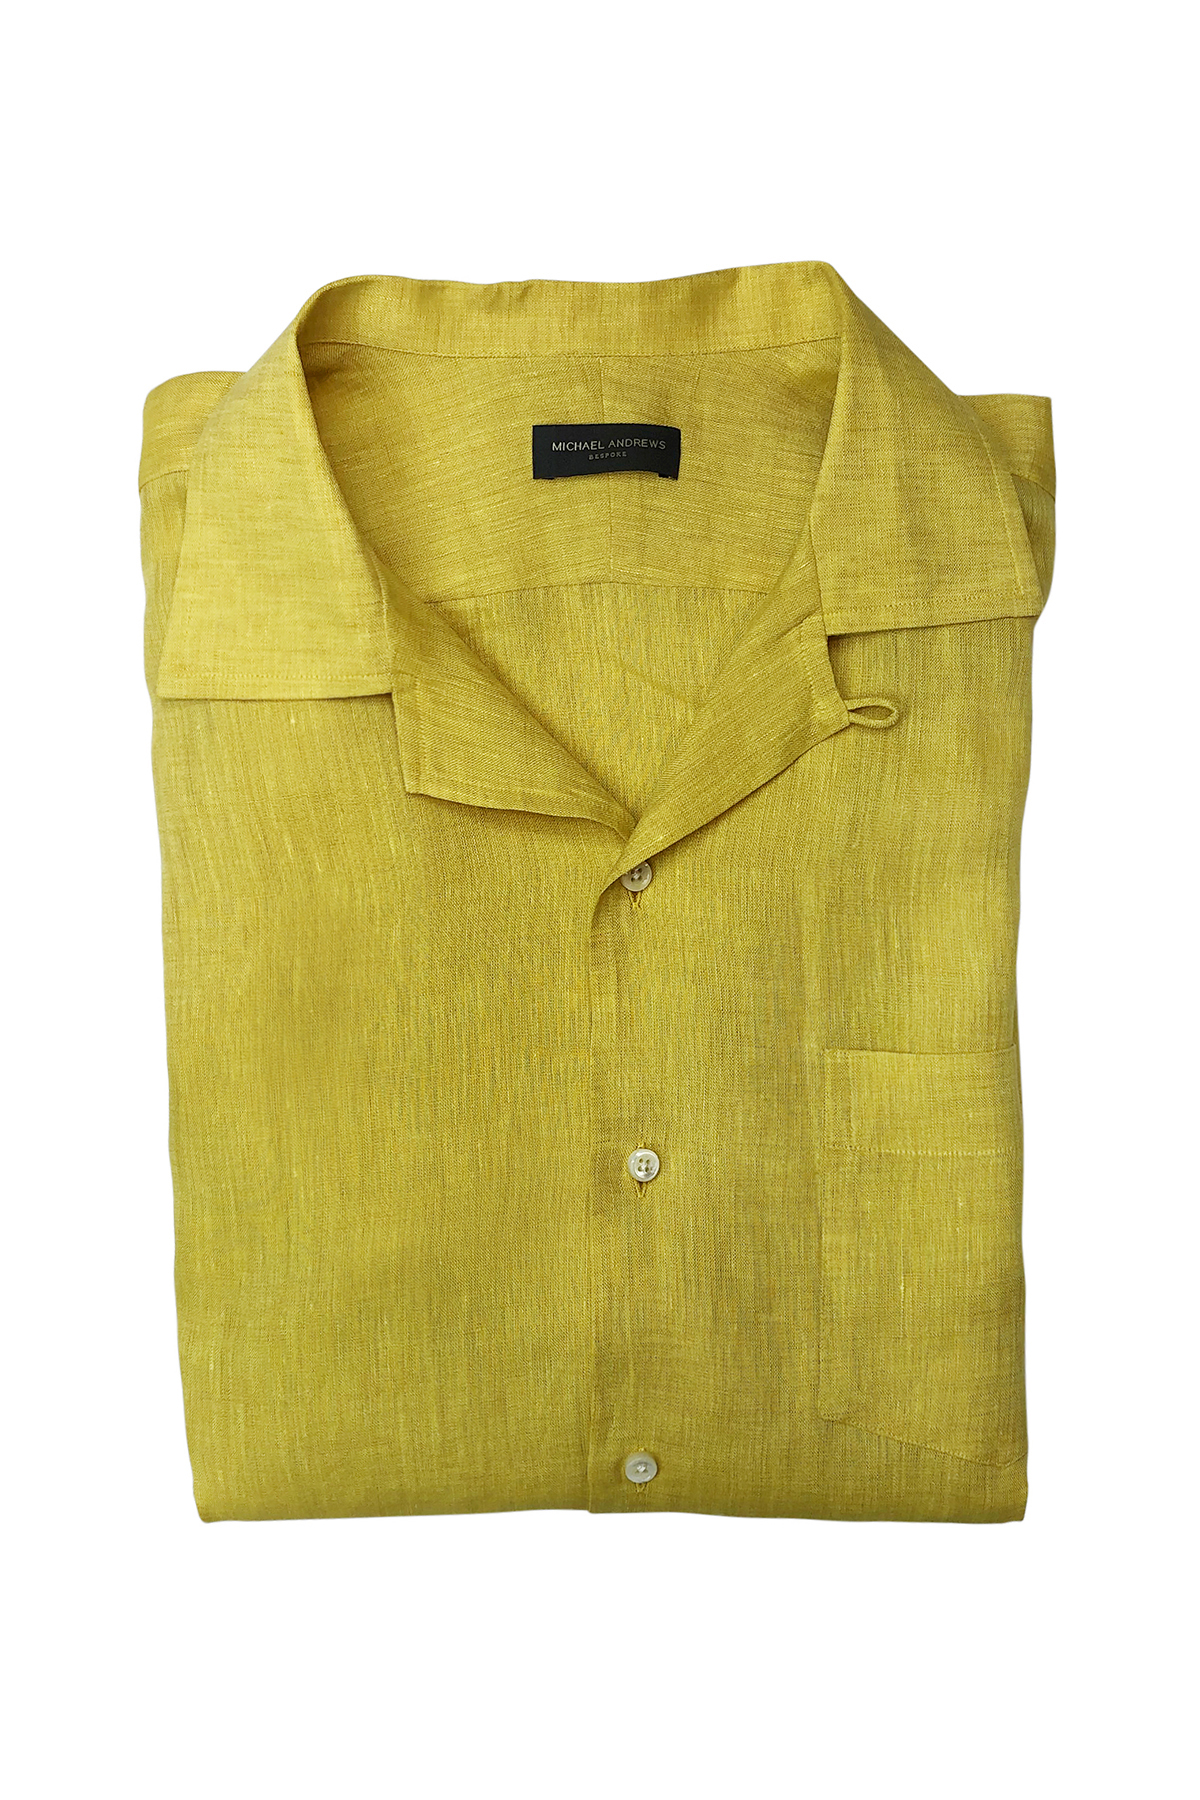 Mustard Yellow Linen Long Sleeve Camp Shirt